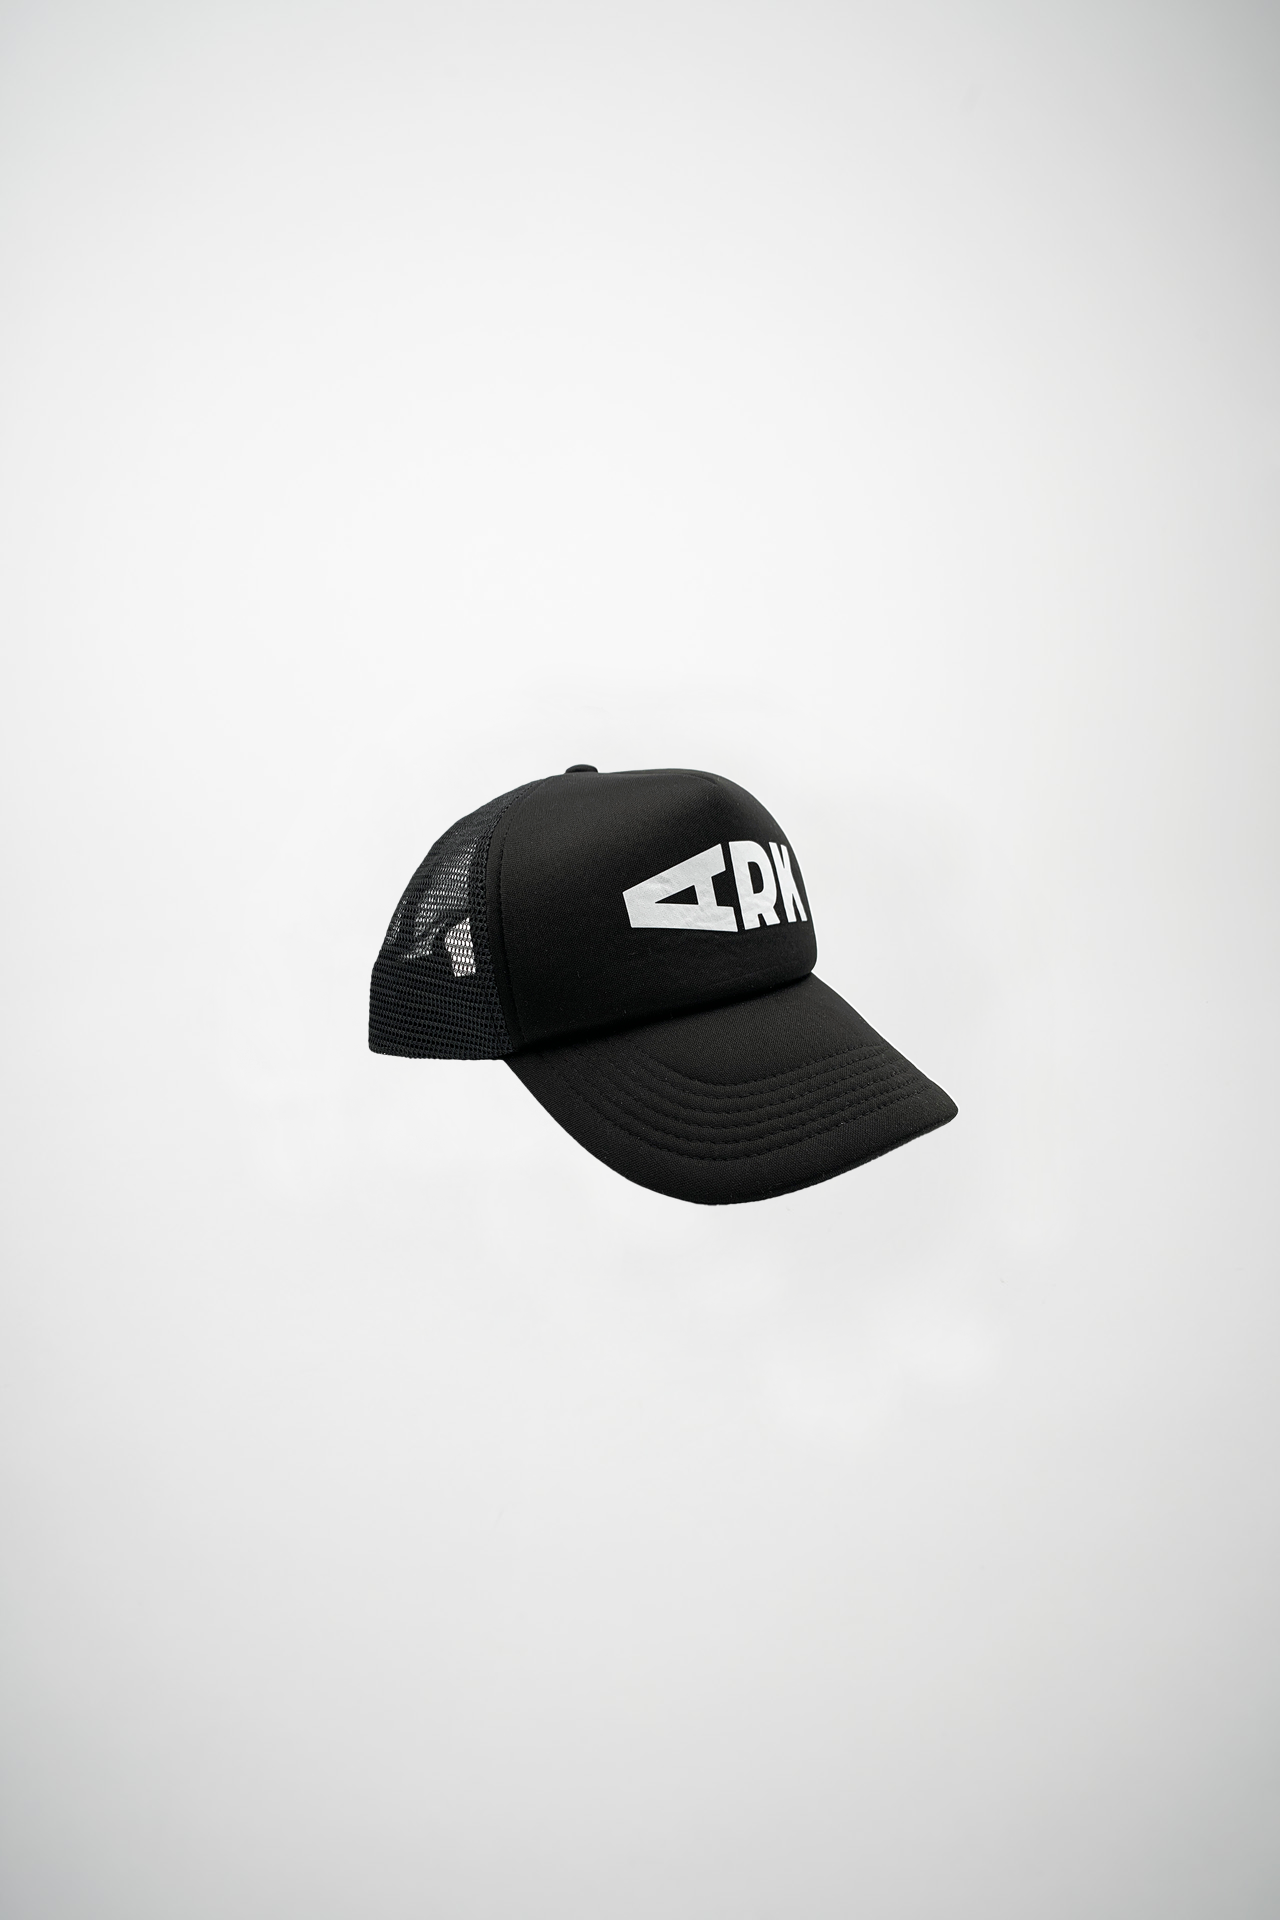 Product photo of ARK Podium Trucker cap